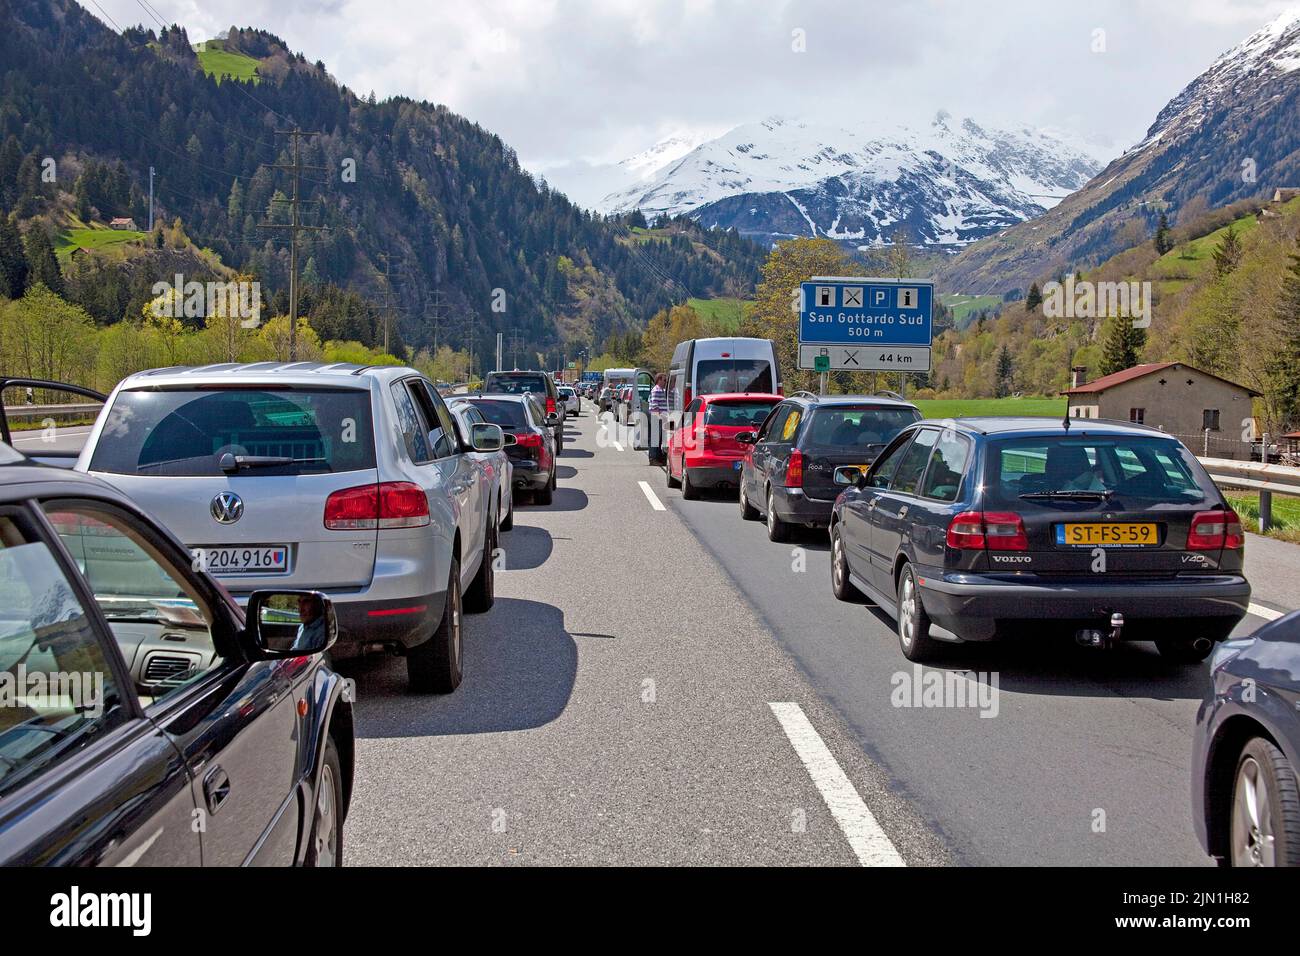 Autoreihe, Stau auf der Autobahn beim San Gotthard-Tunnel, Schweiz, Europa Stockfoto